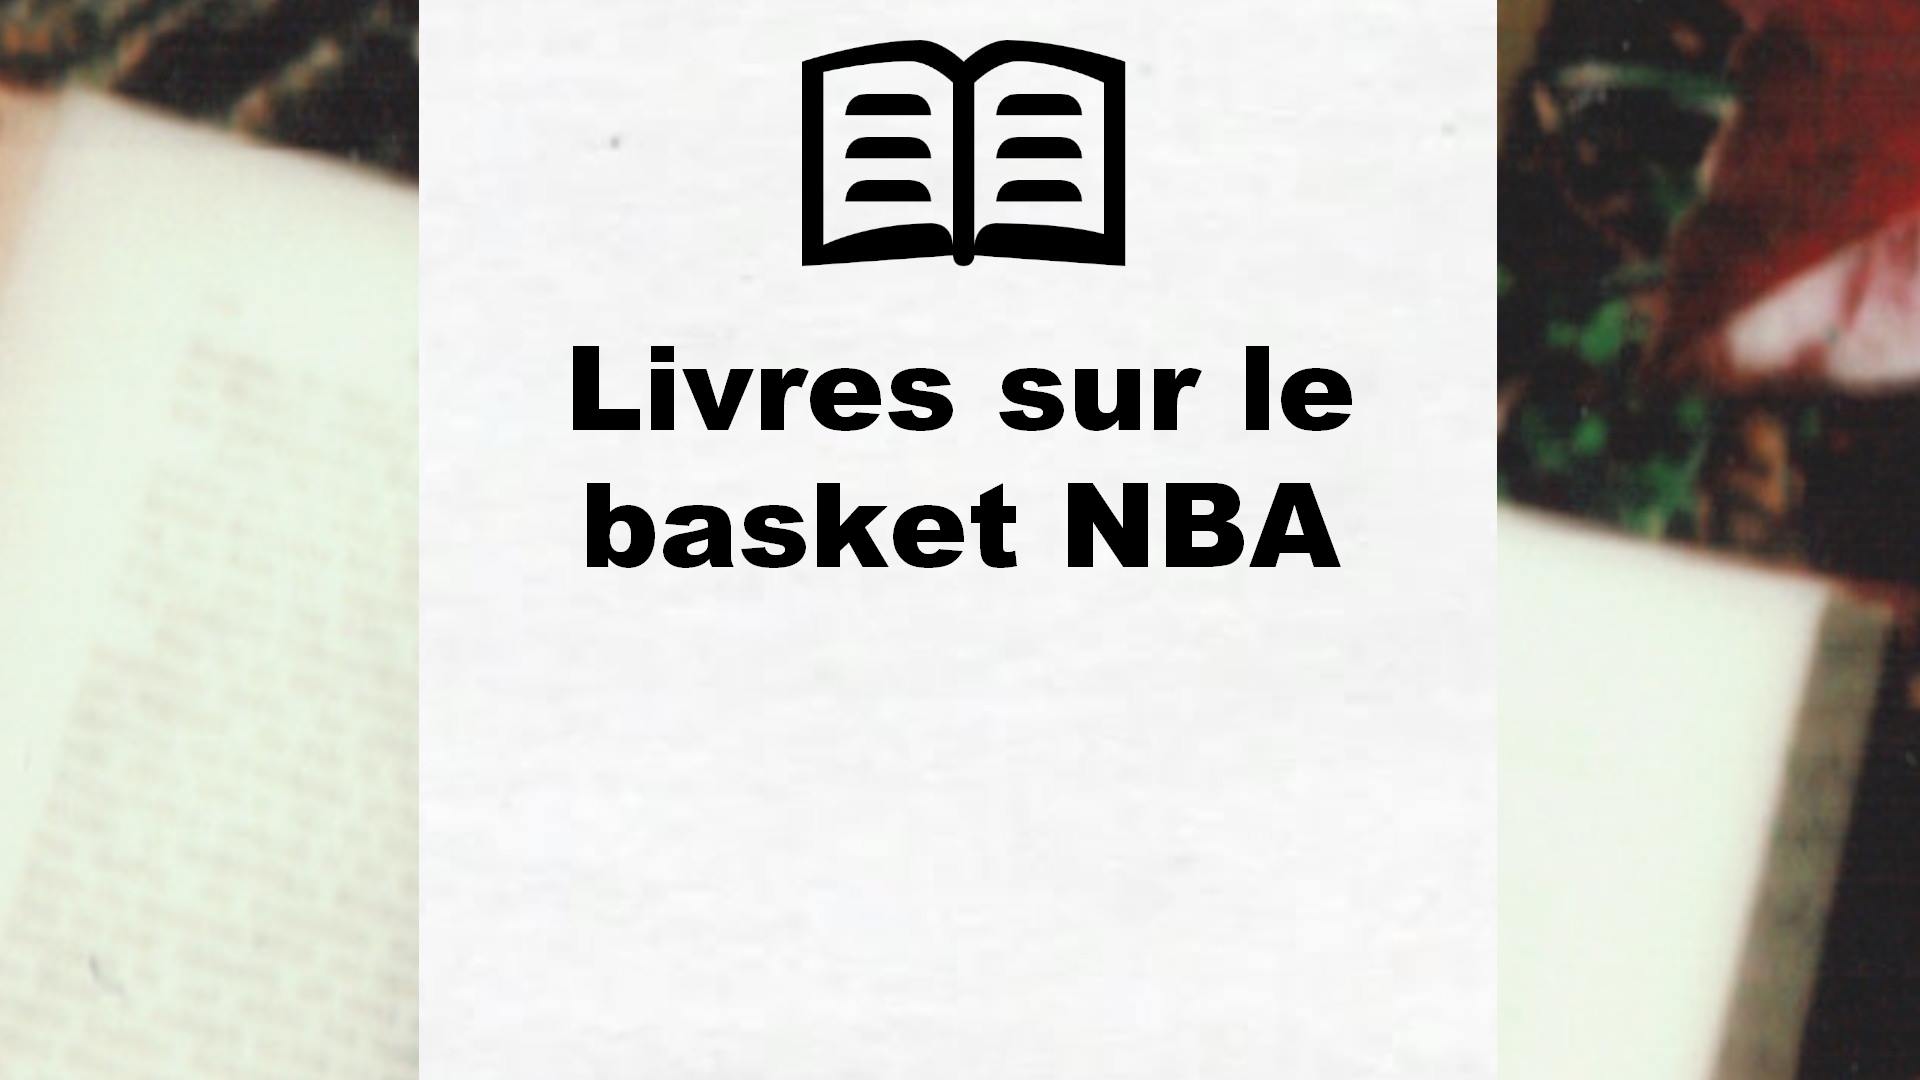 Livres sur le basket NBA